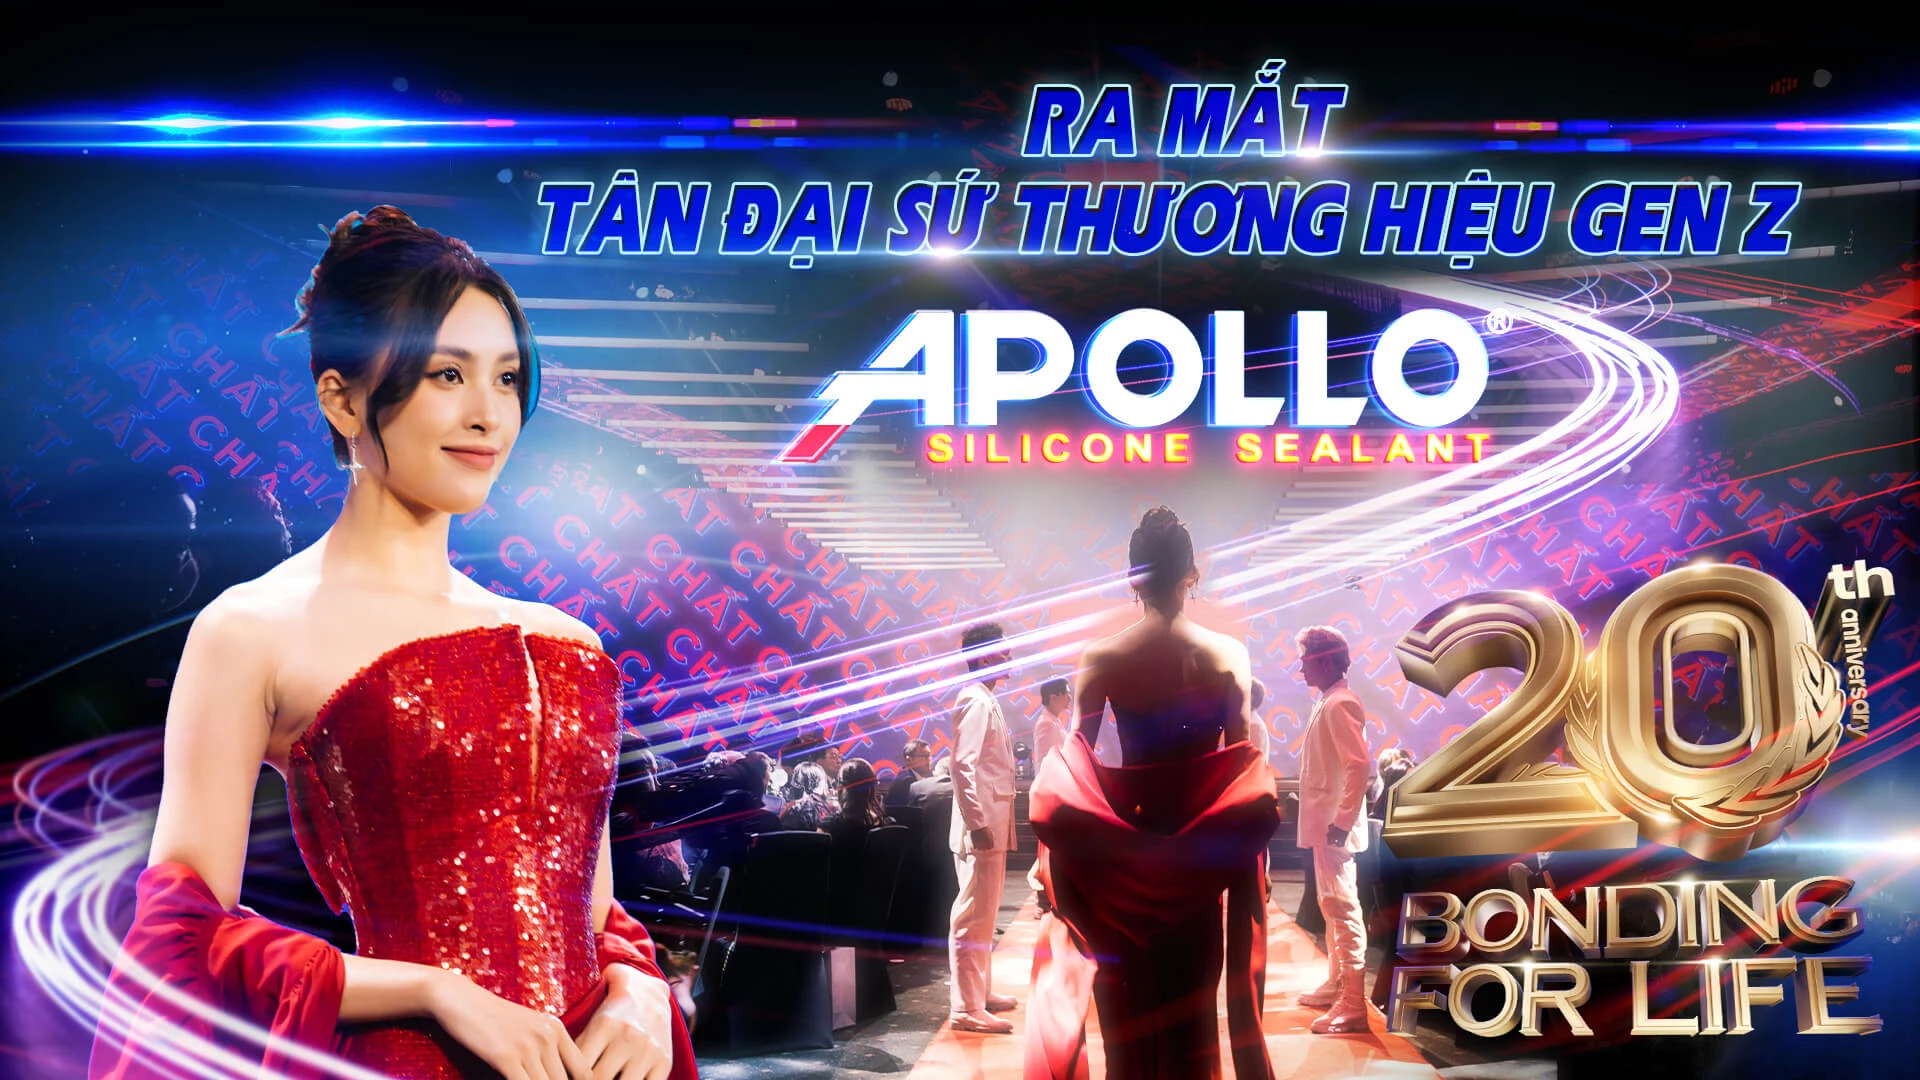 Ra Mắt Tân Đại Sứ Thương Hiệu GenZ - Hoa hậu Trần Tiểu Vy | Apollo 20th Anniversary Celebration